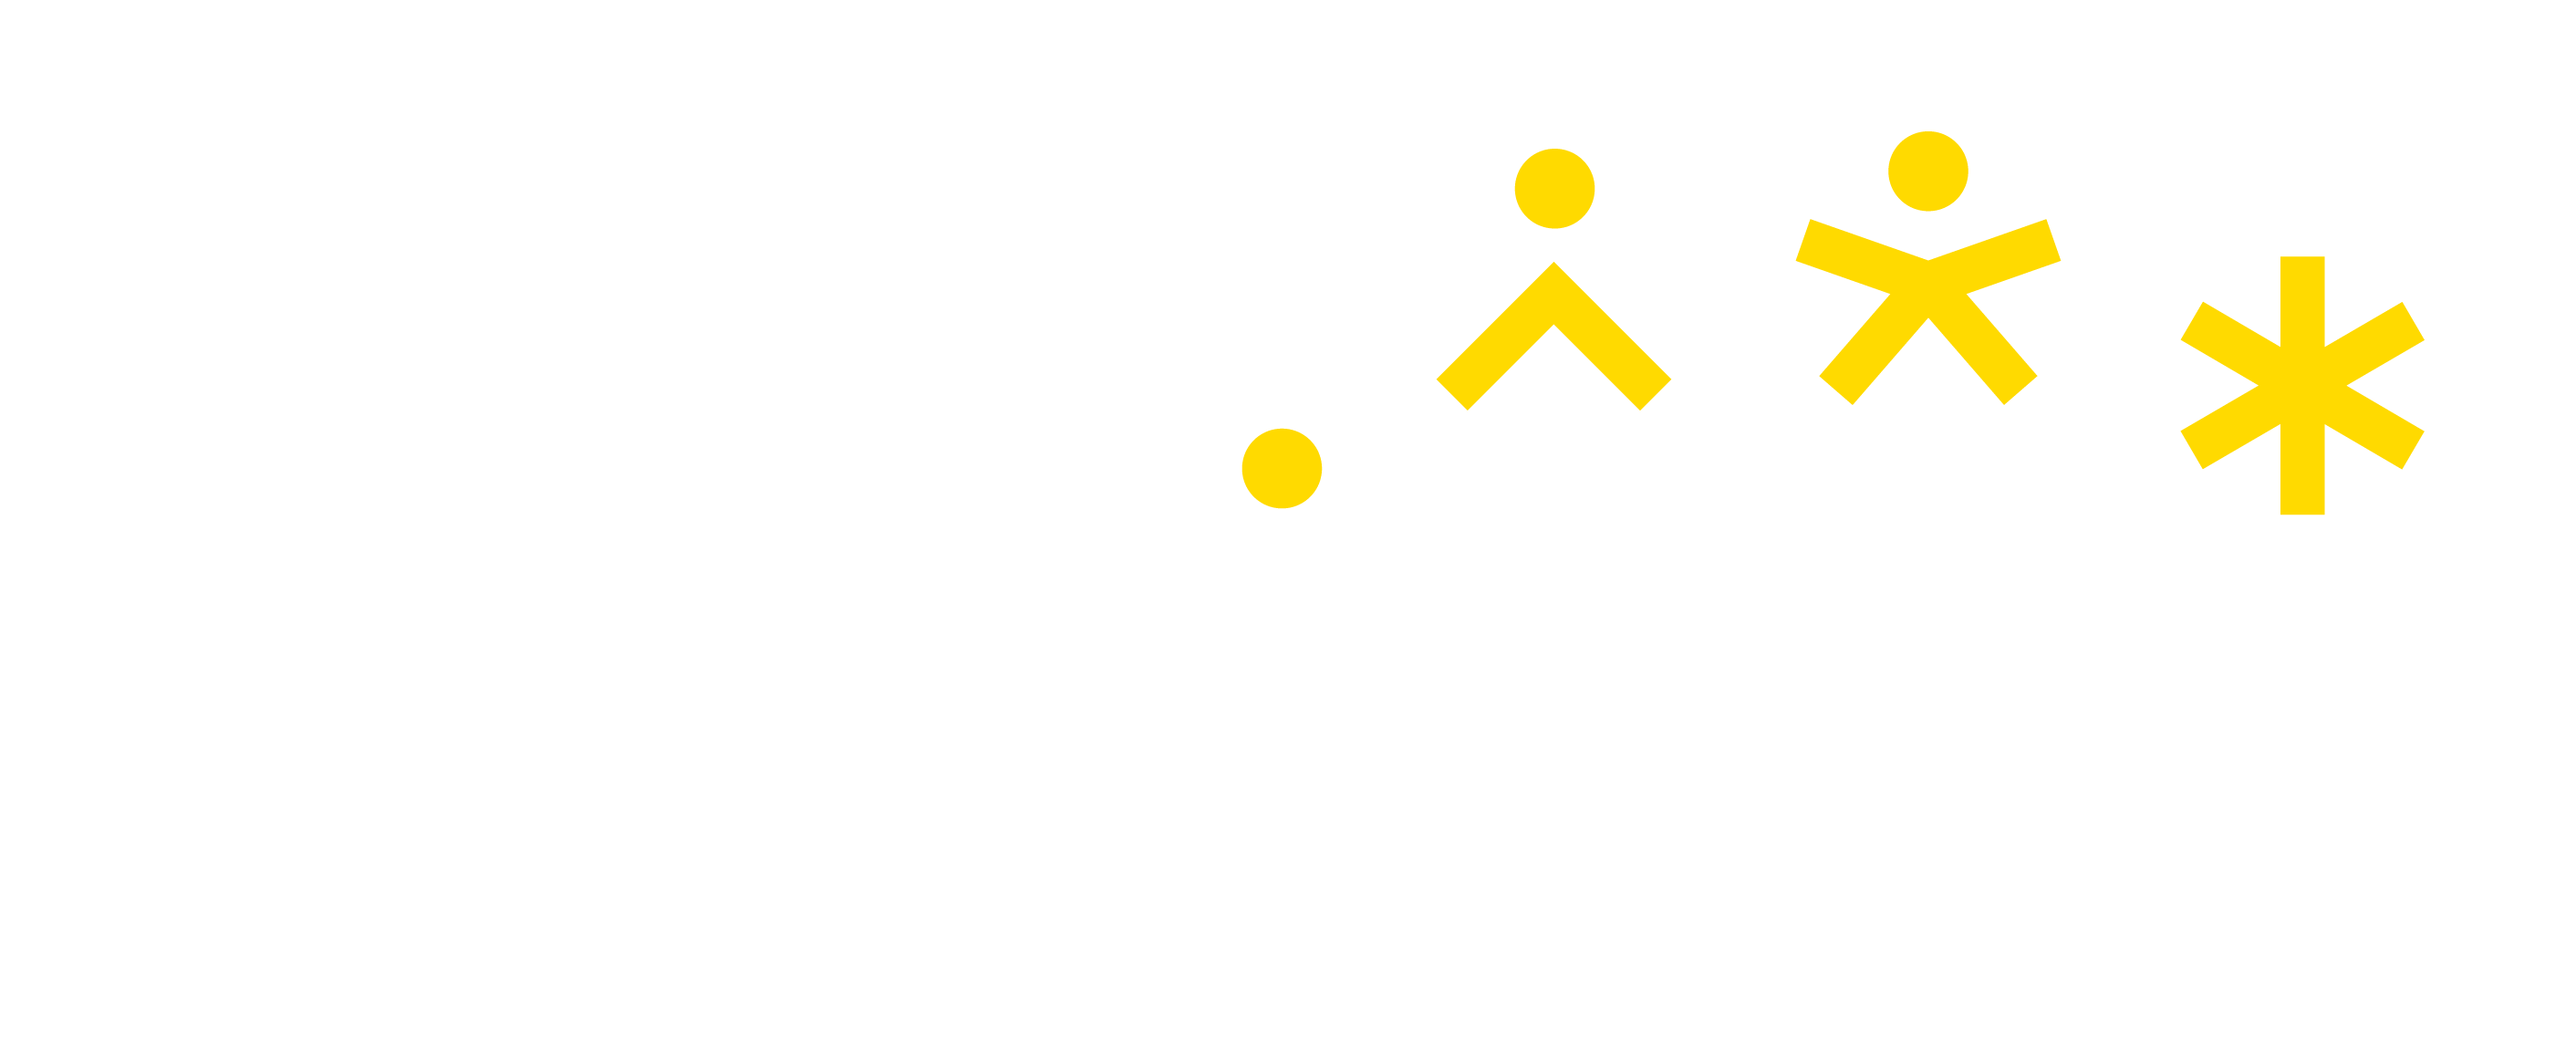 EURASHE logo